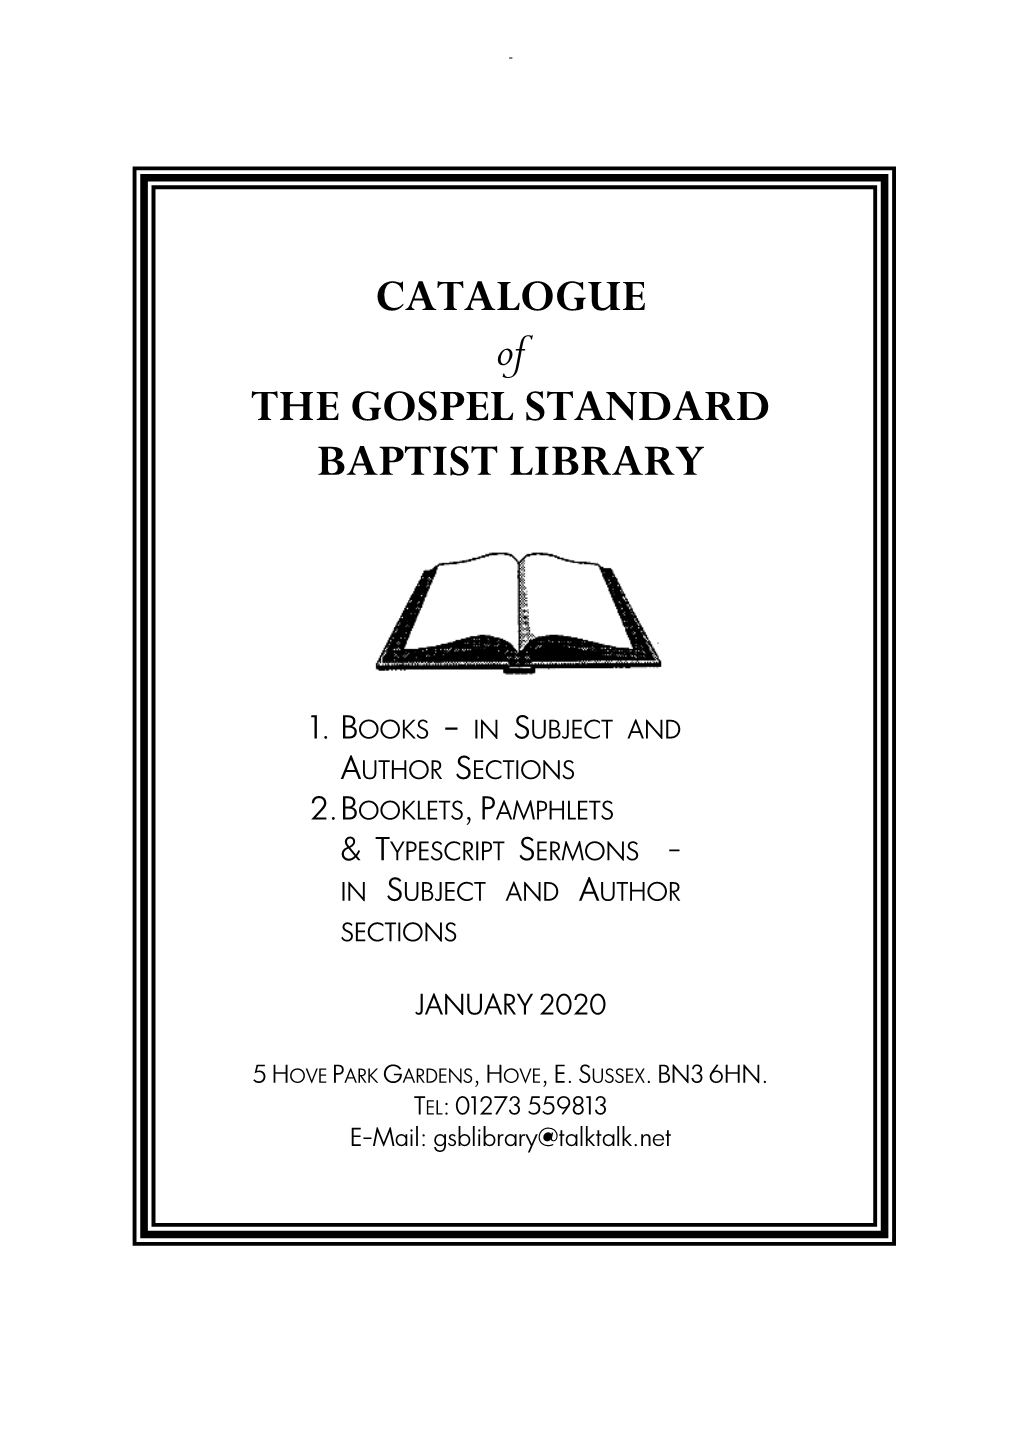 G S Library Catalogue January 2020